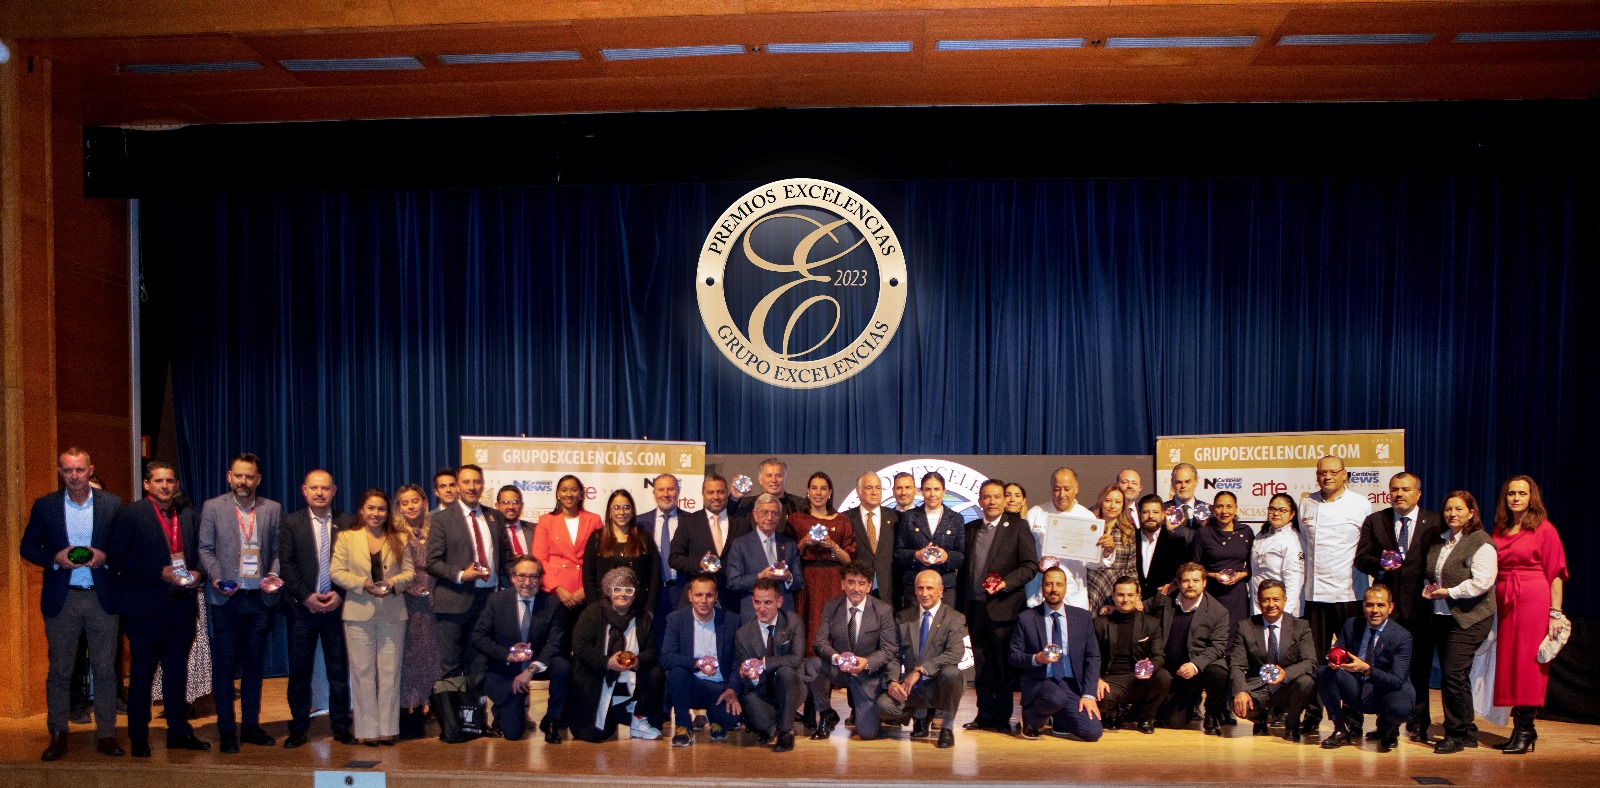 Grupo Excelencias entrega los Premios Excelencias 2023 en Fitur